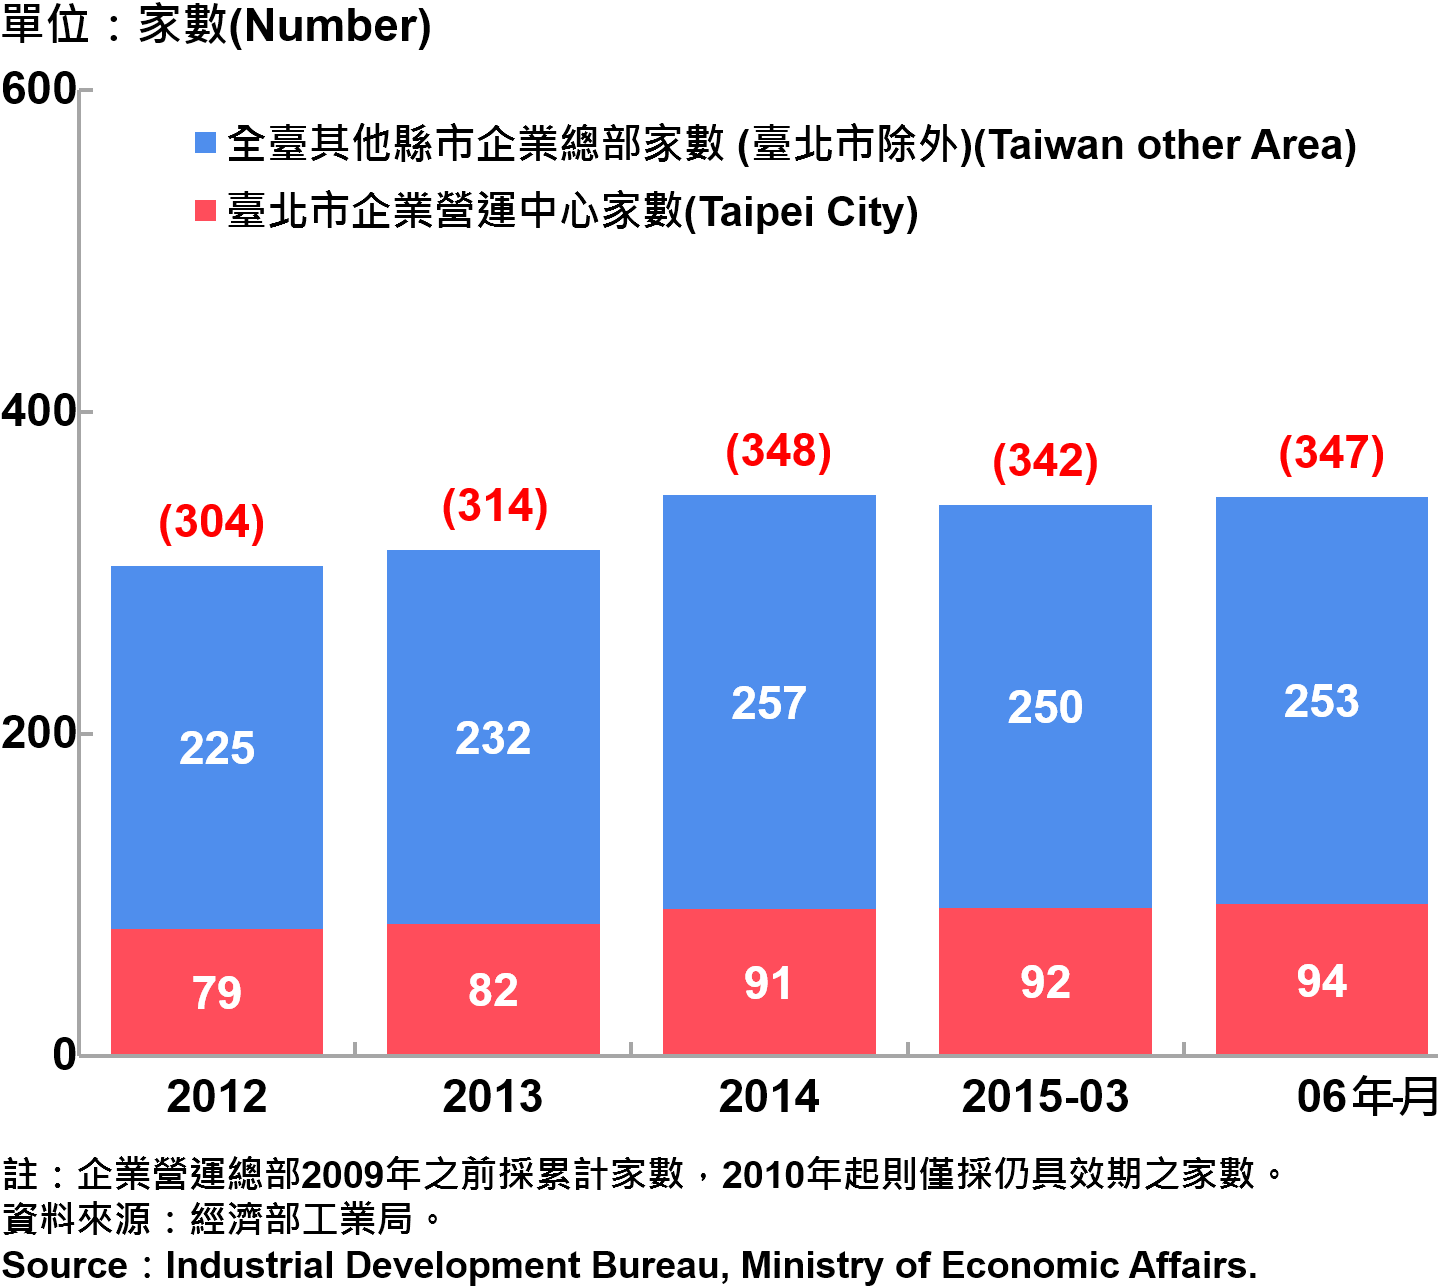 圖15：臺北市企業營運總部之設立家數趨勢圖 Number of Established Enterprise Business Headquarters in Taipei